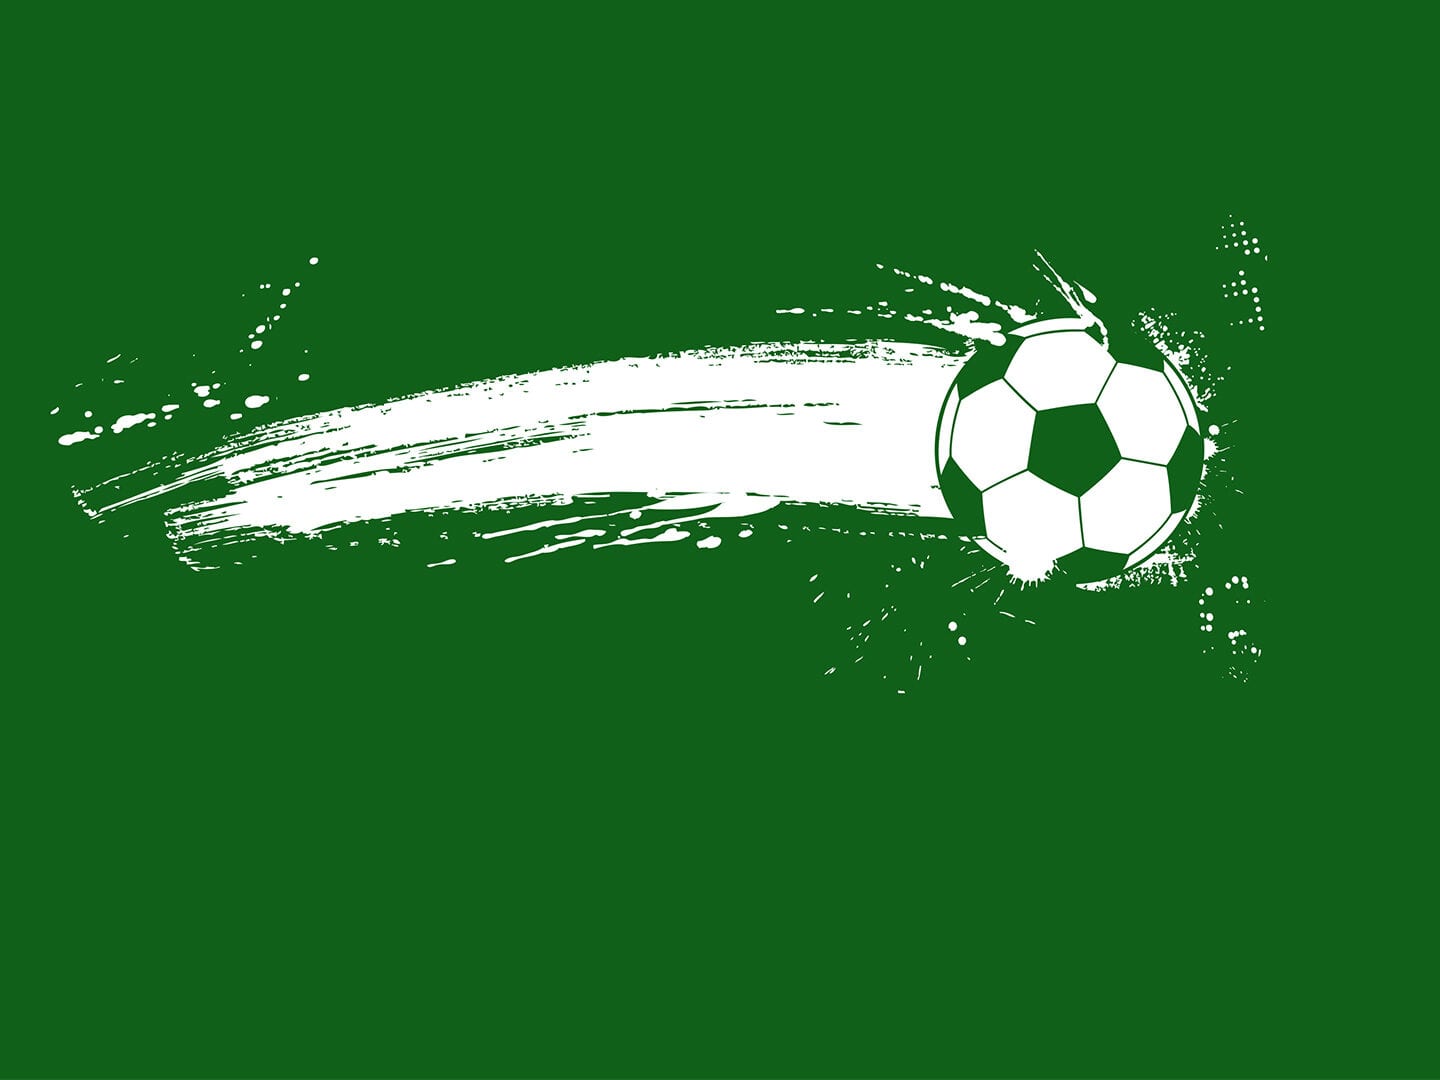 Ein gemalter Fußball vor einem grünen Hintergrund